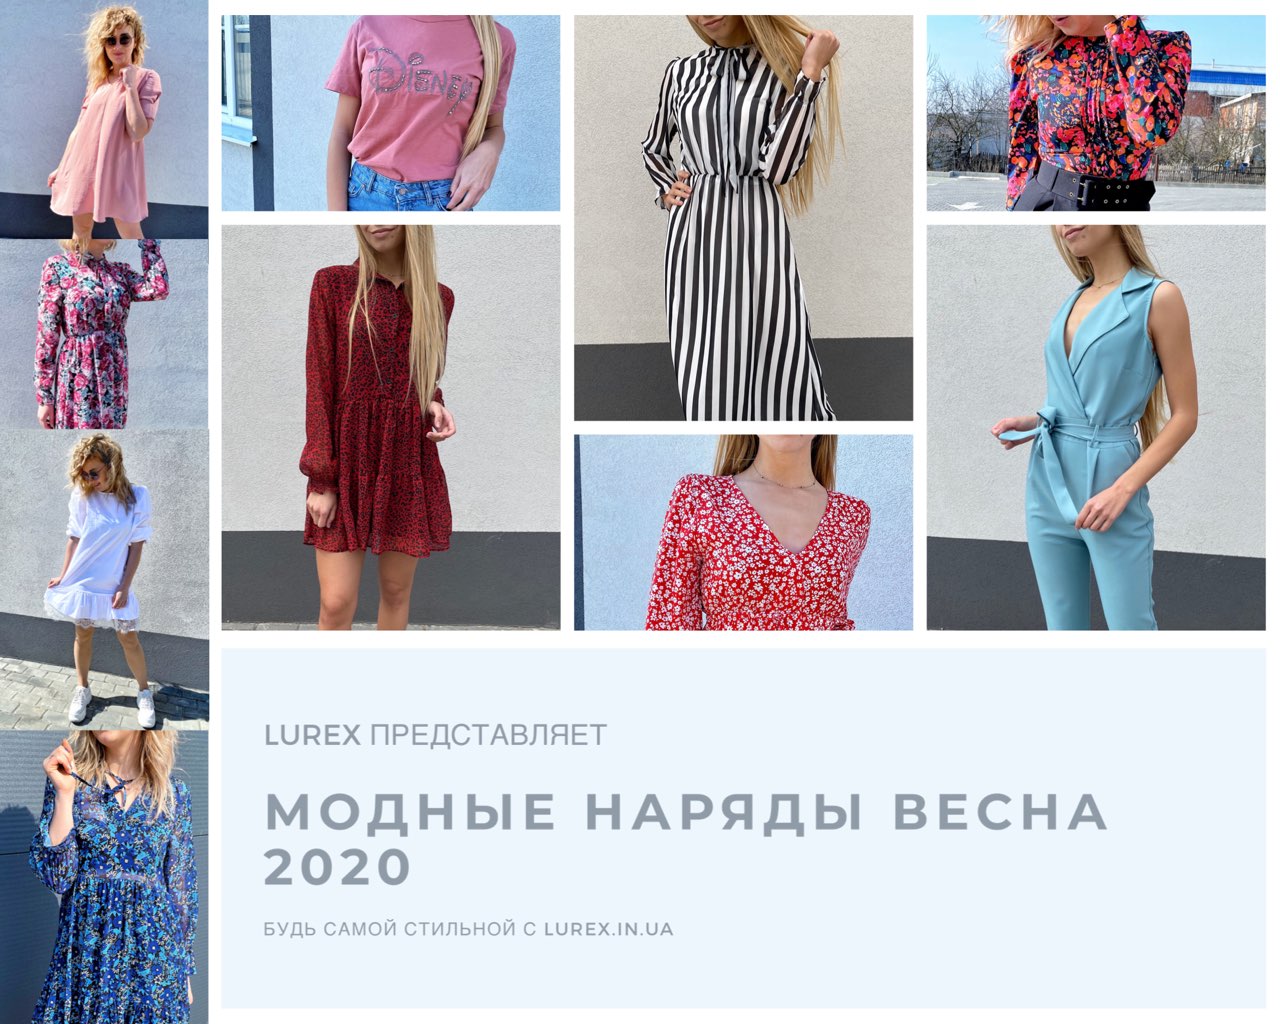 Модные наряды Весна 2020